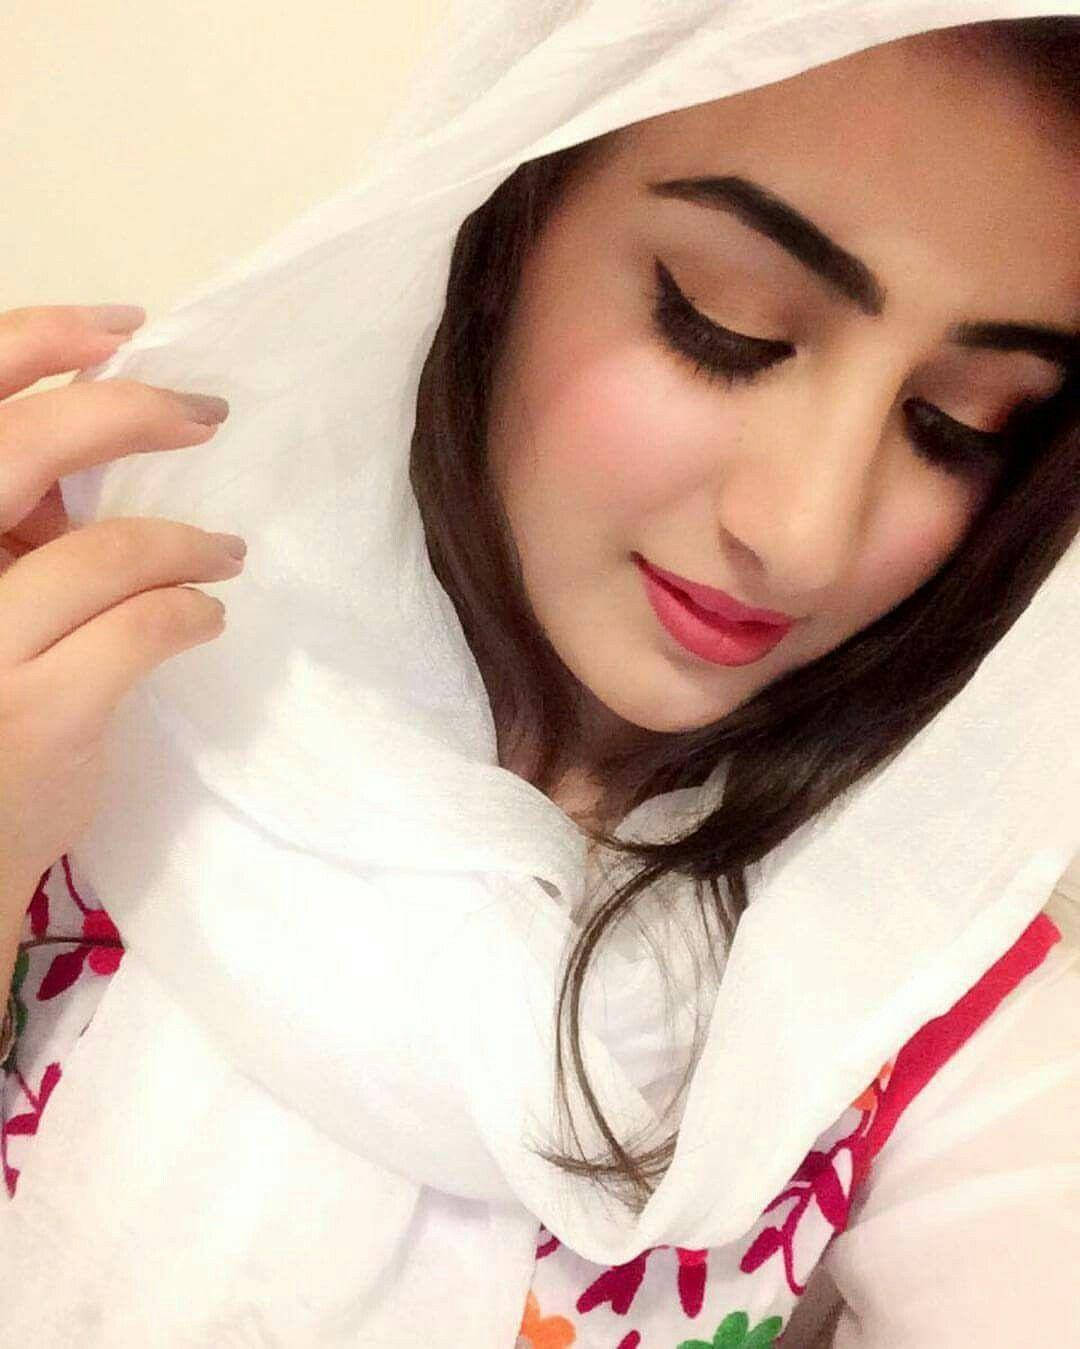 Hijabmädchen Selfie In Weiß Wallpaper